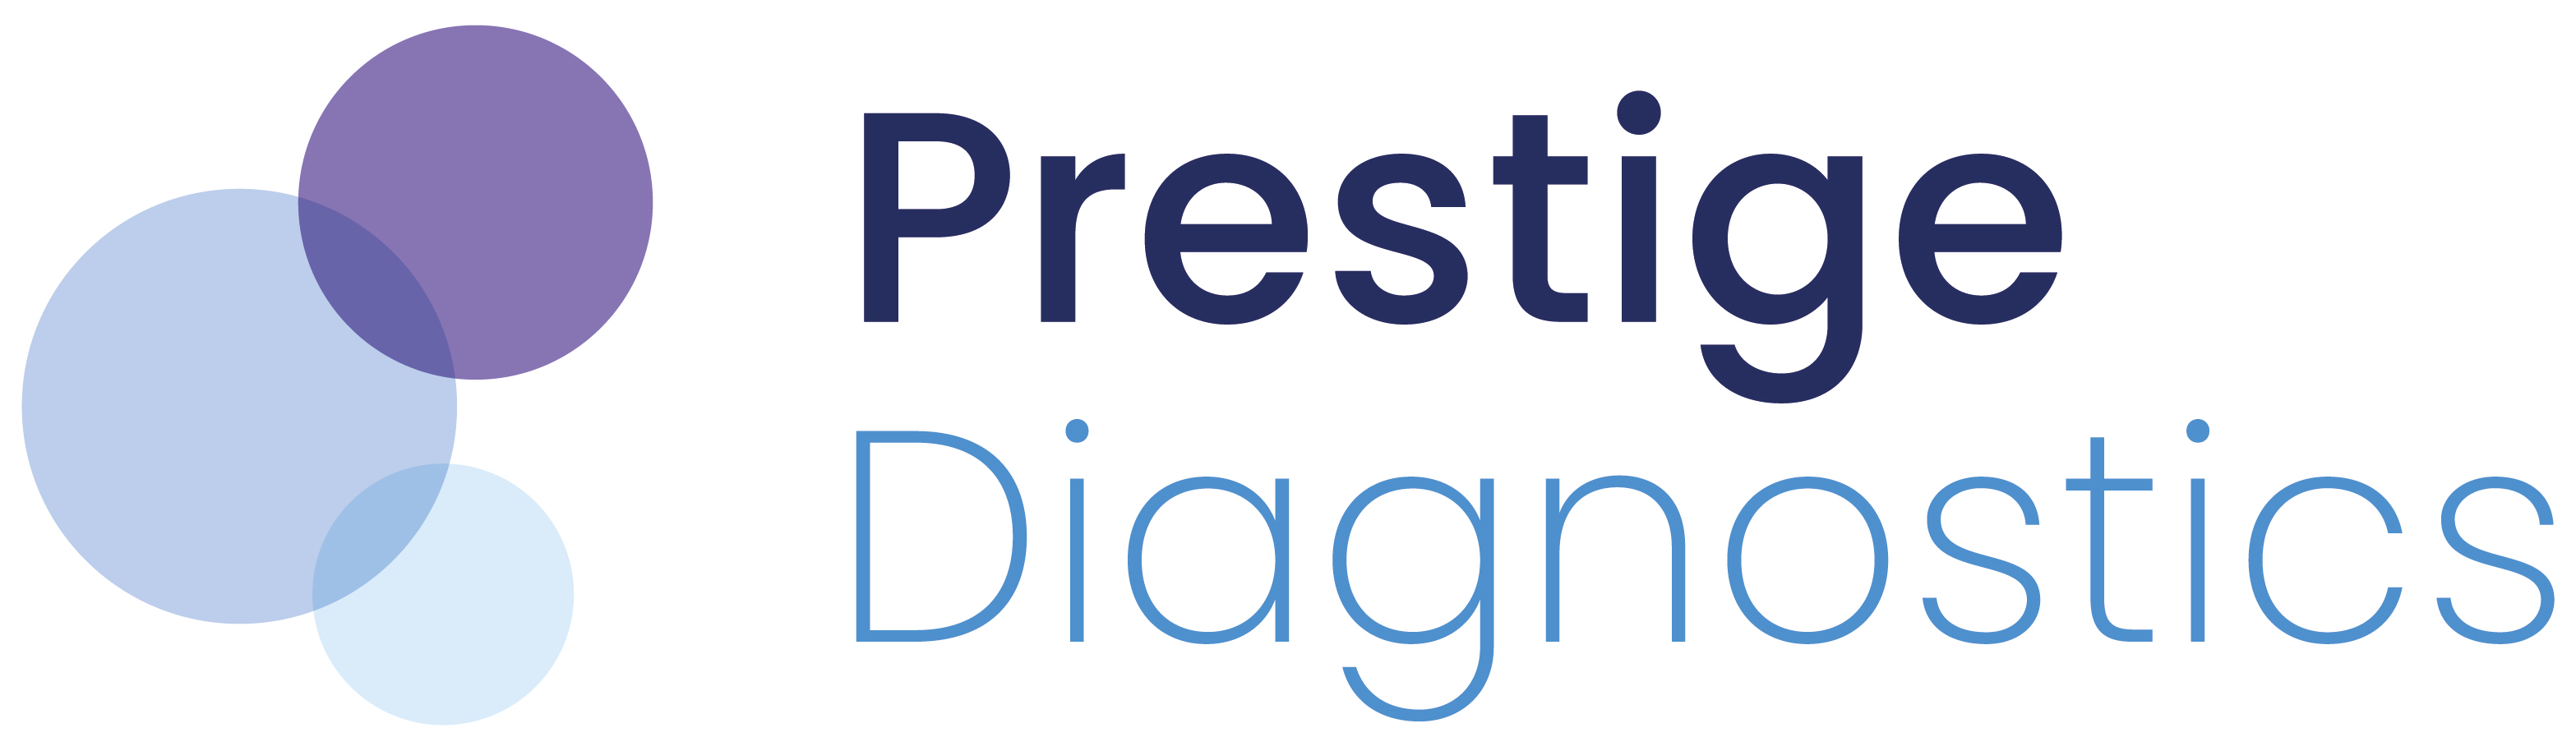 Prestige Diagnostics, IVD Manufacturer